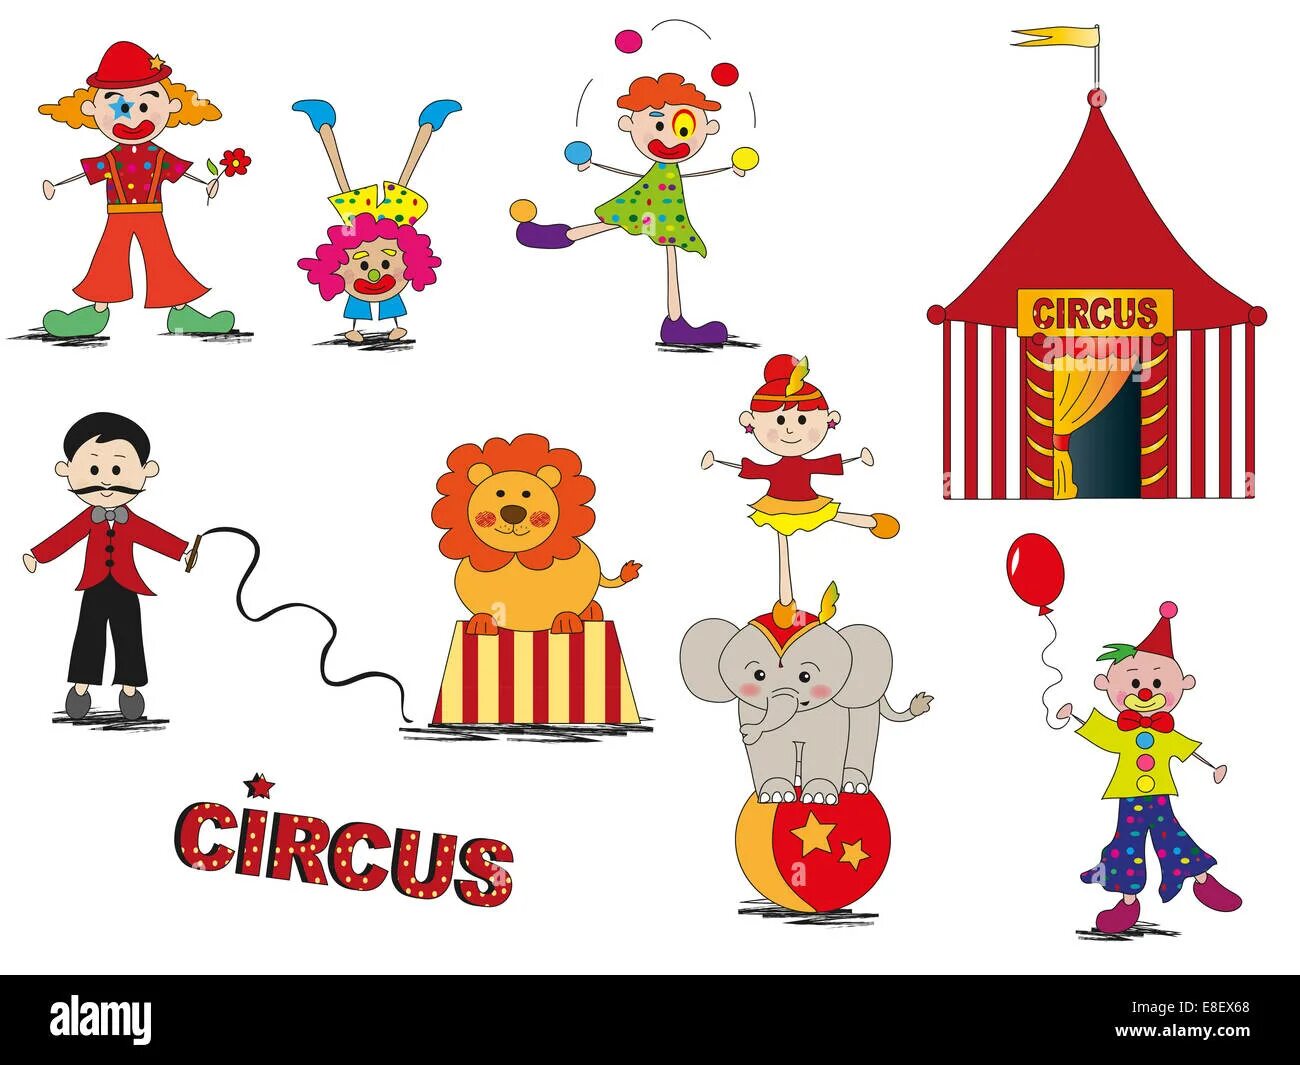 На английском про цирк. Цирк мультяшный. Рисунок на тему цирк. Цирк Картун. Афиша цирка в мультяшном стиле.